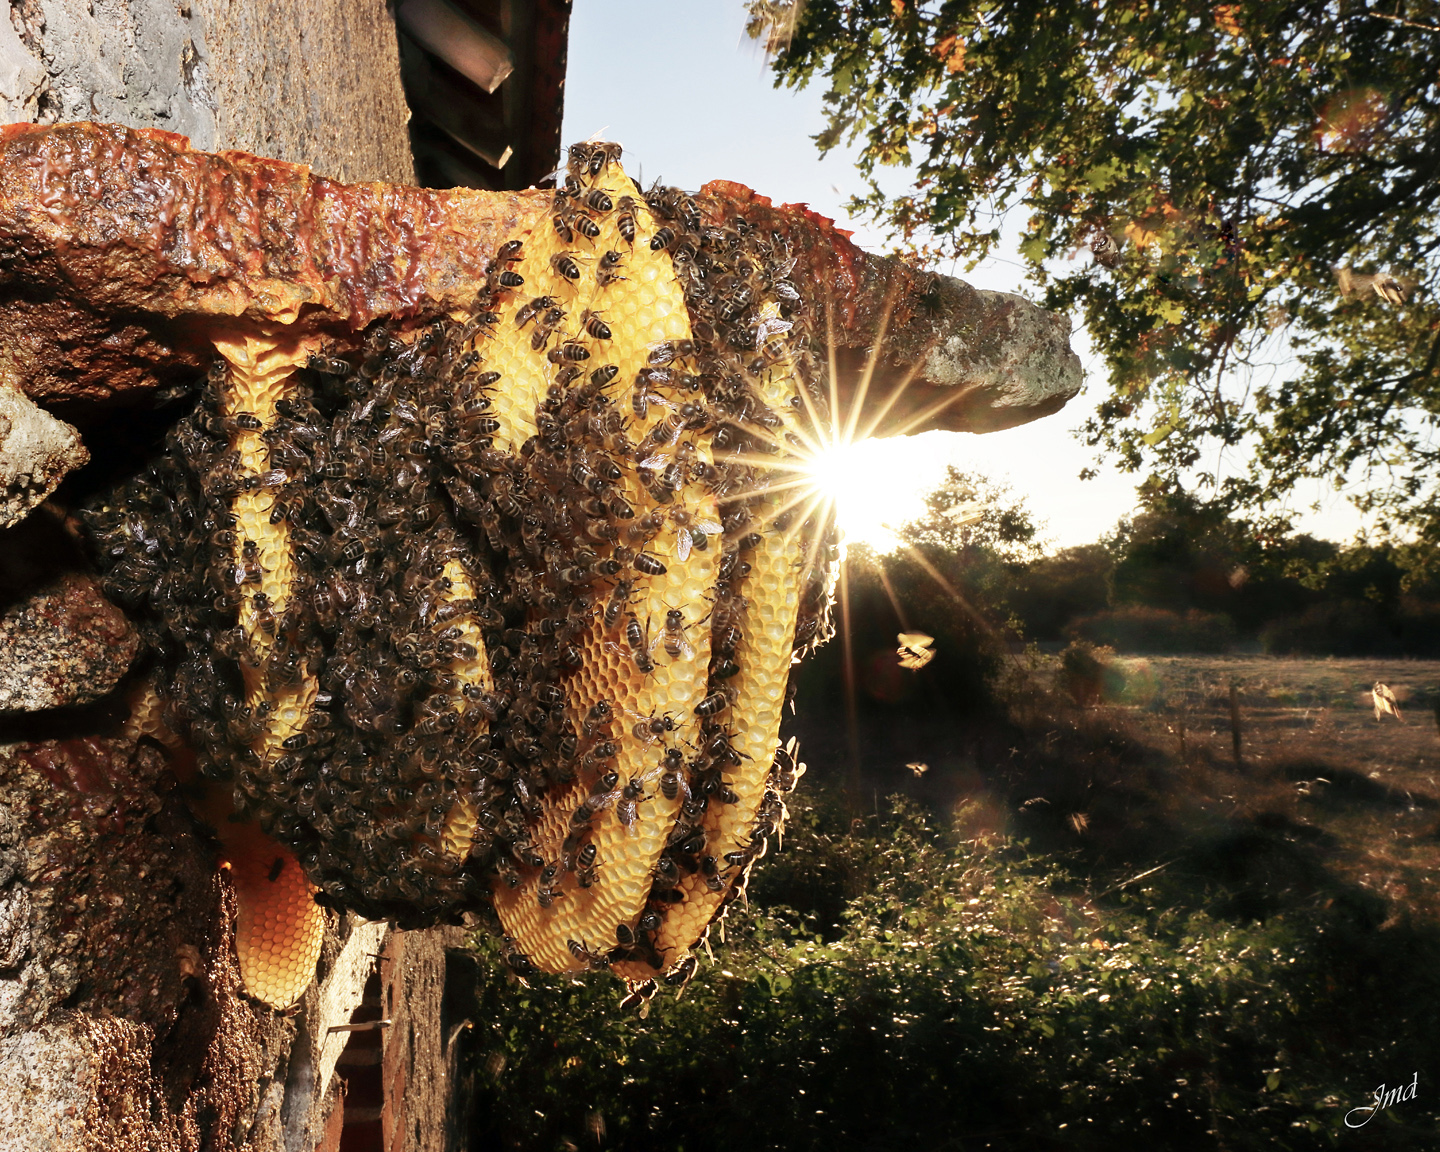 Après essaimage, une colonie d’abeilles mellifères s’est installée sous un linteau de pierre et a construit ses rayons. Photo : ©Jean-Marie Durand